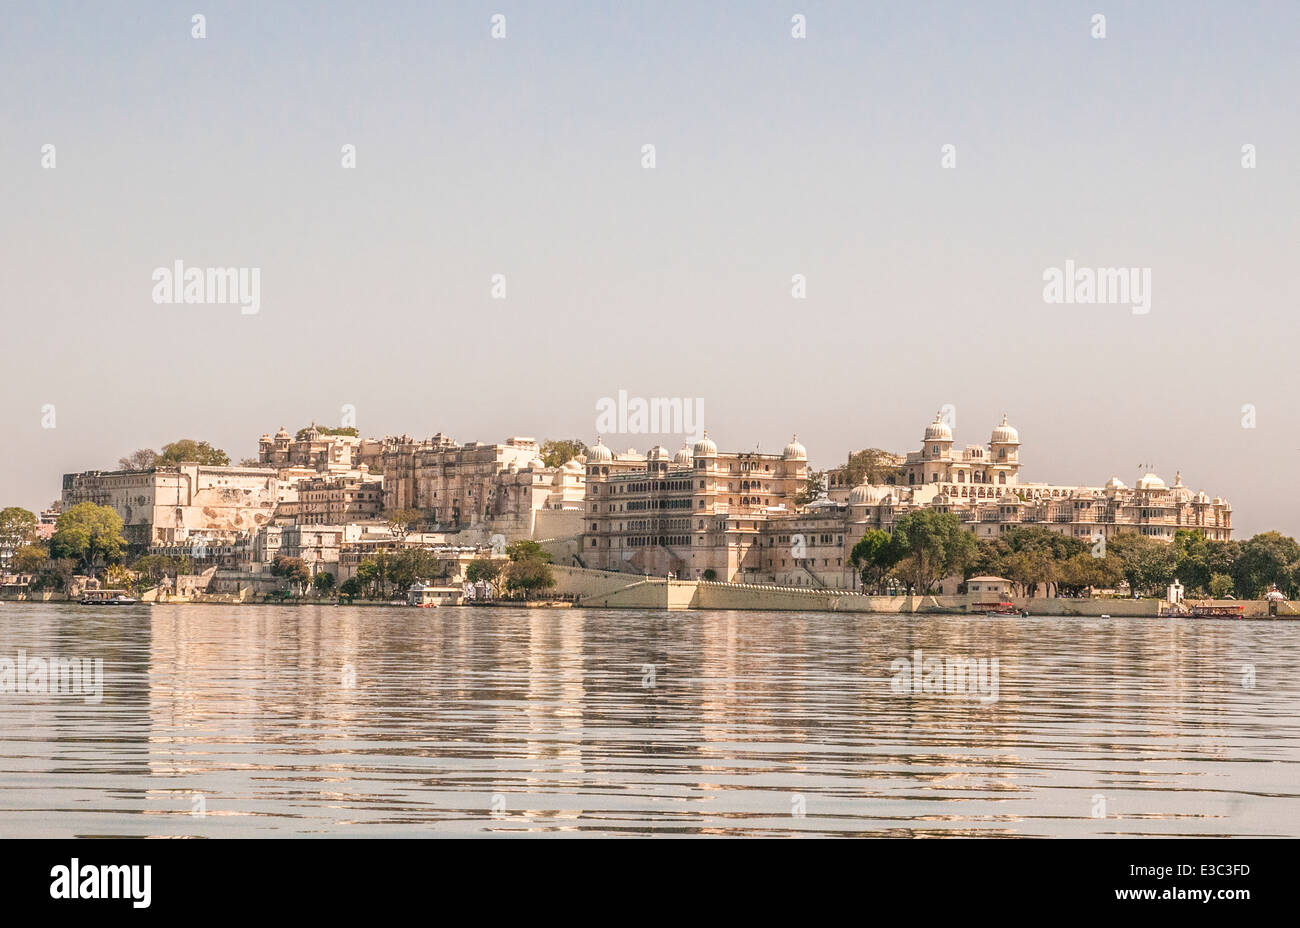 Indien, Rajasthan, Udaipur Stadtbild von Jag Mandir Palace im Pichola-See Stockfoto